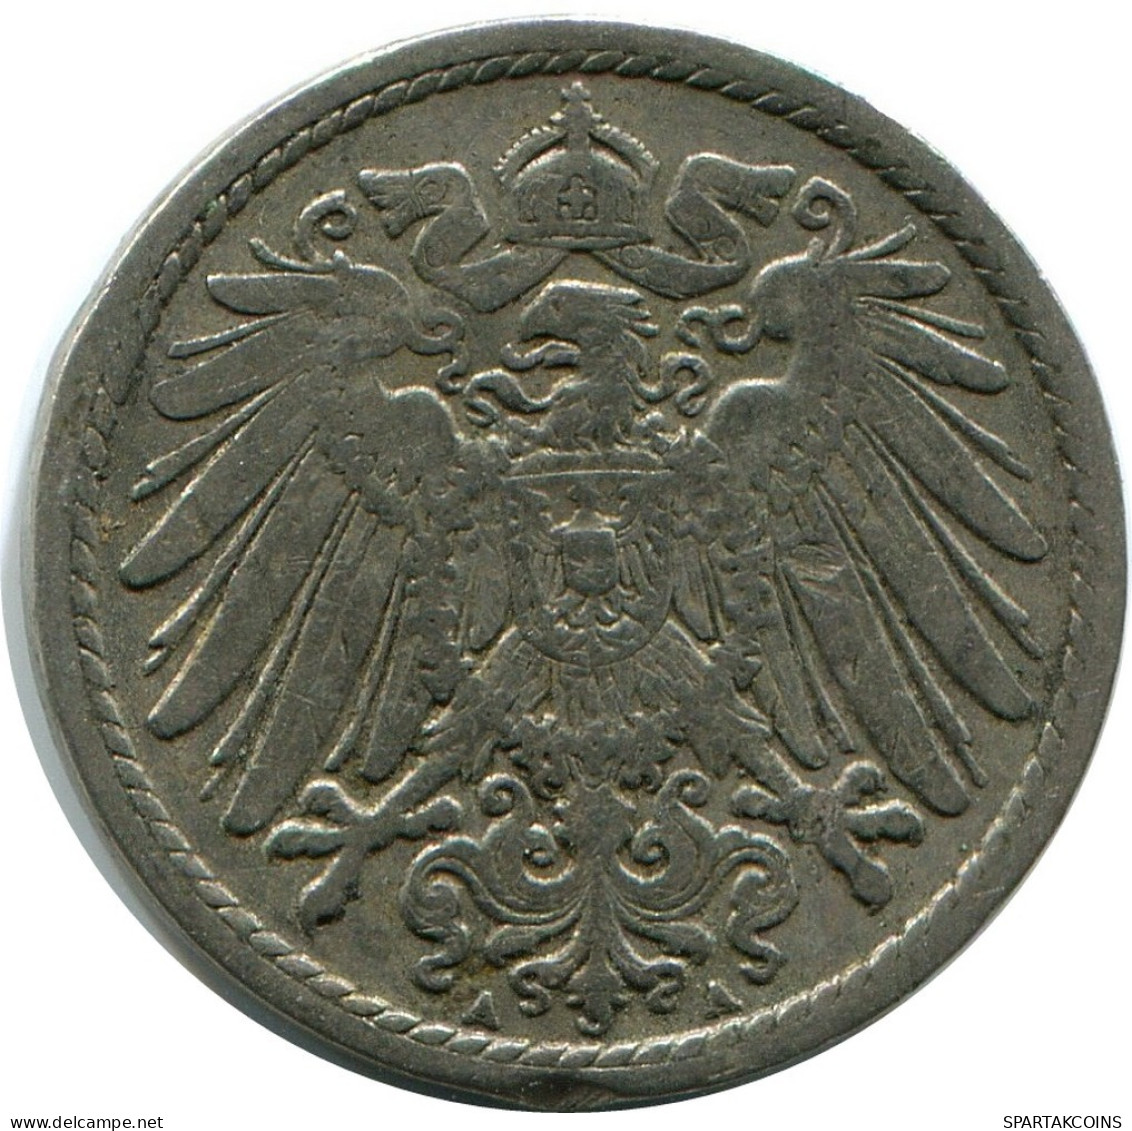 5 PFENNIG 1900 A GERMANY Coin #DB235.U.A - 5 Pfennig